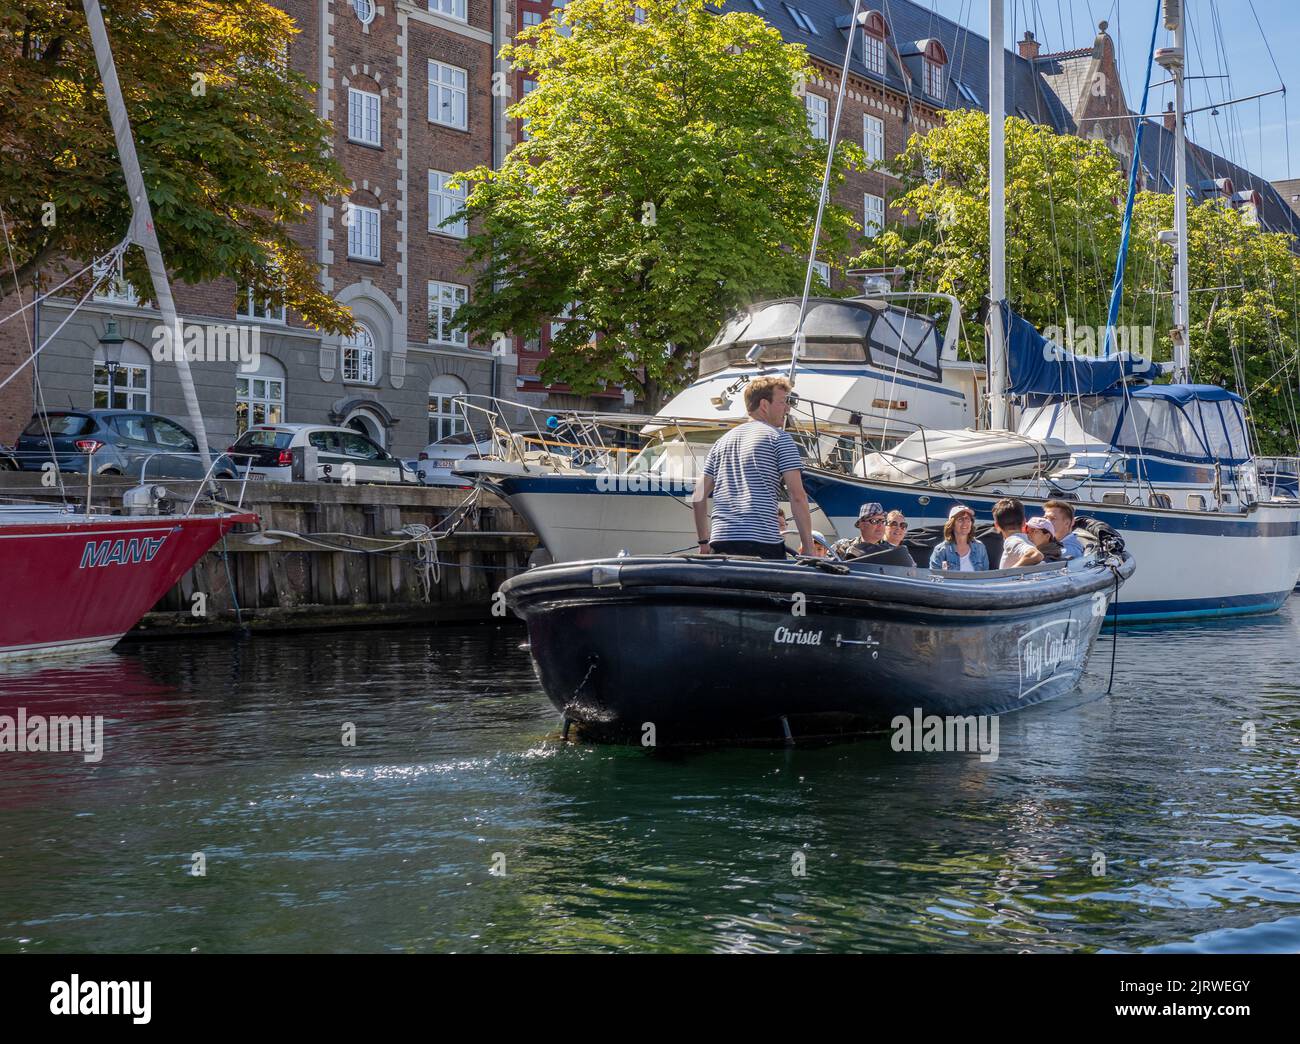 Los turistas disfrutan de un pequeño paseo en barco guiado por Copenhague, Dinamarca, en un barco navegando por uno de los canales de la ciudad bajo el sol Foto de stock